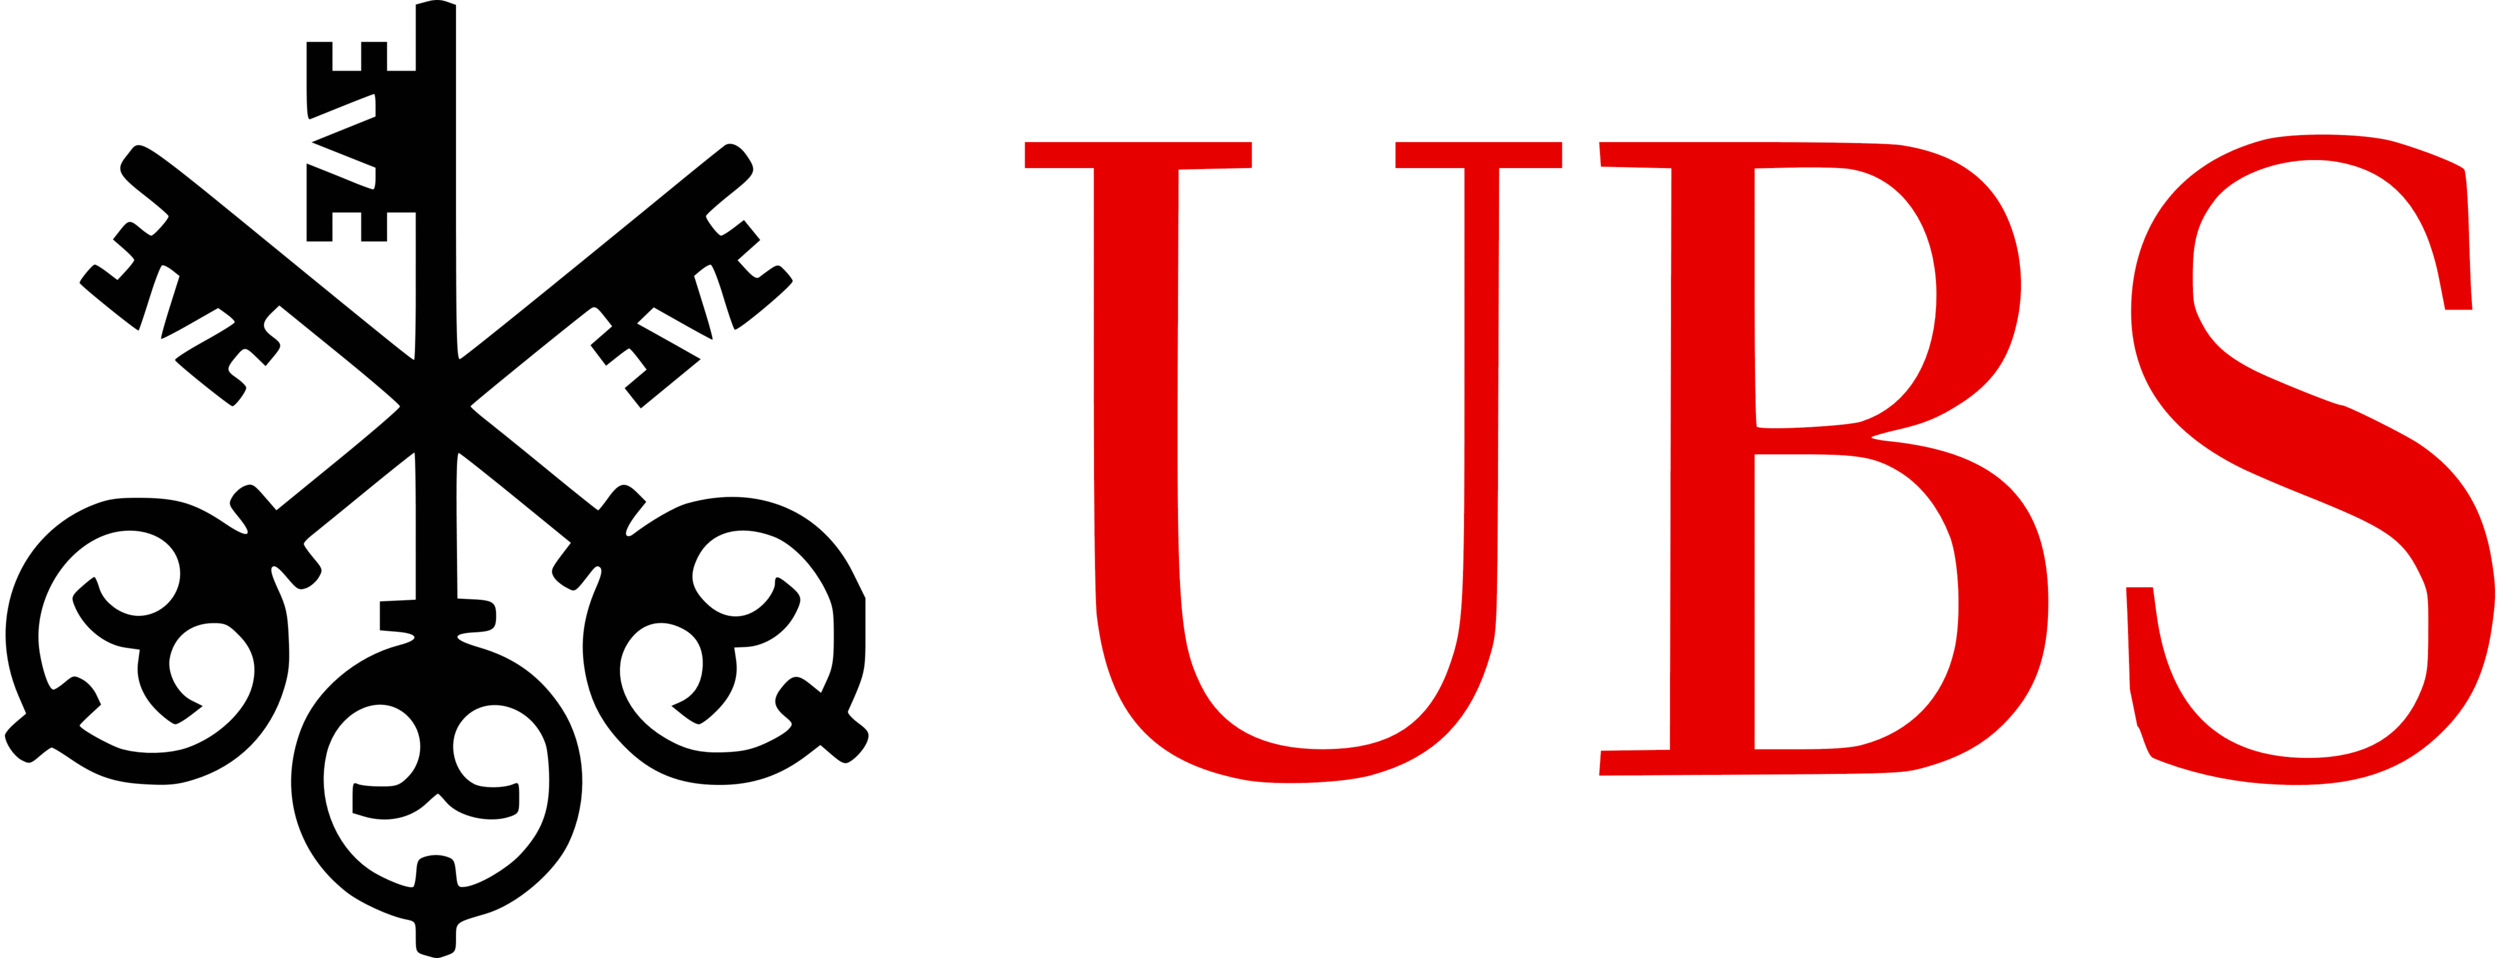 Банку ubs. Эмблема UBS. Логотипы швейцарских банков. UBS Group AG. Логотип УБС.